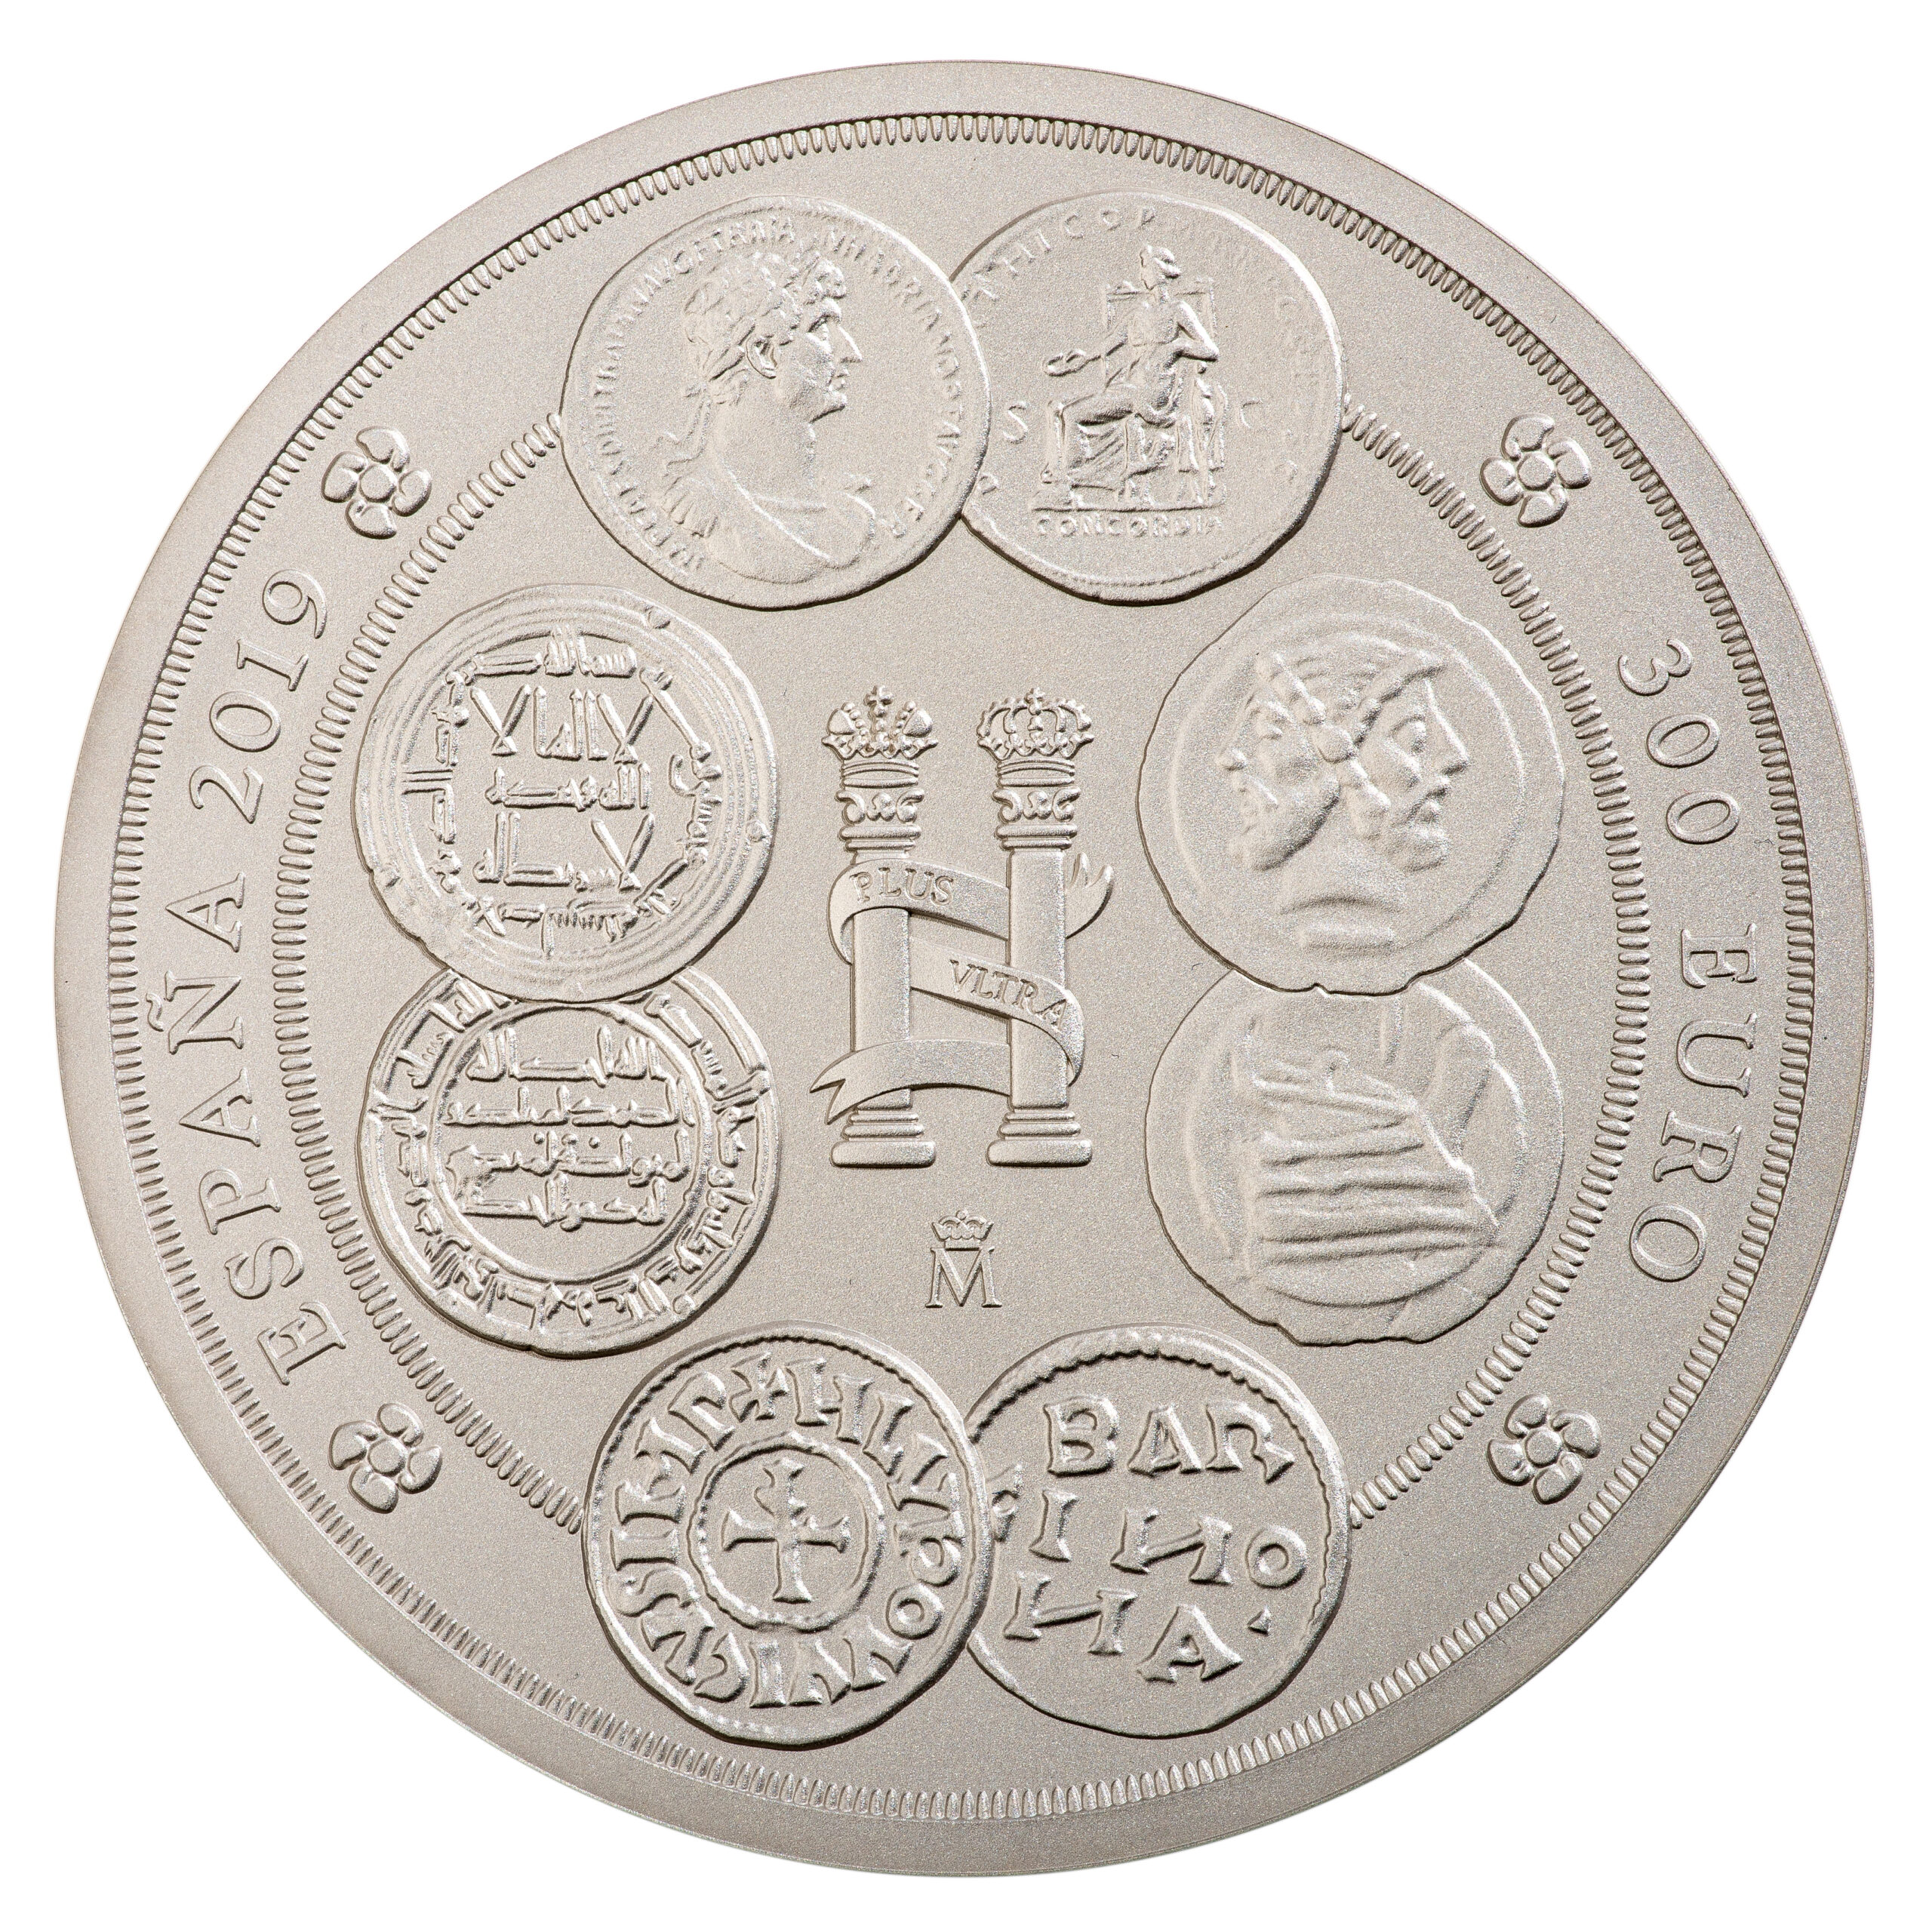 ES 300 Euro 2019 Real Casa de la Moneda logo